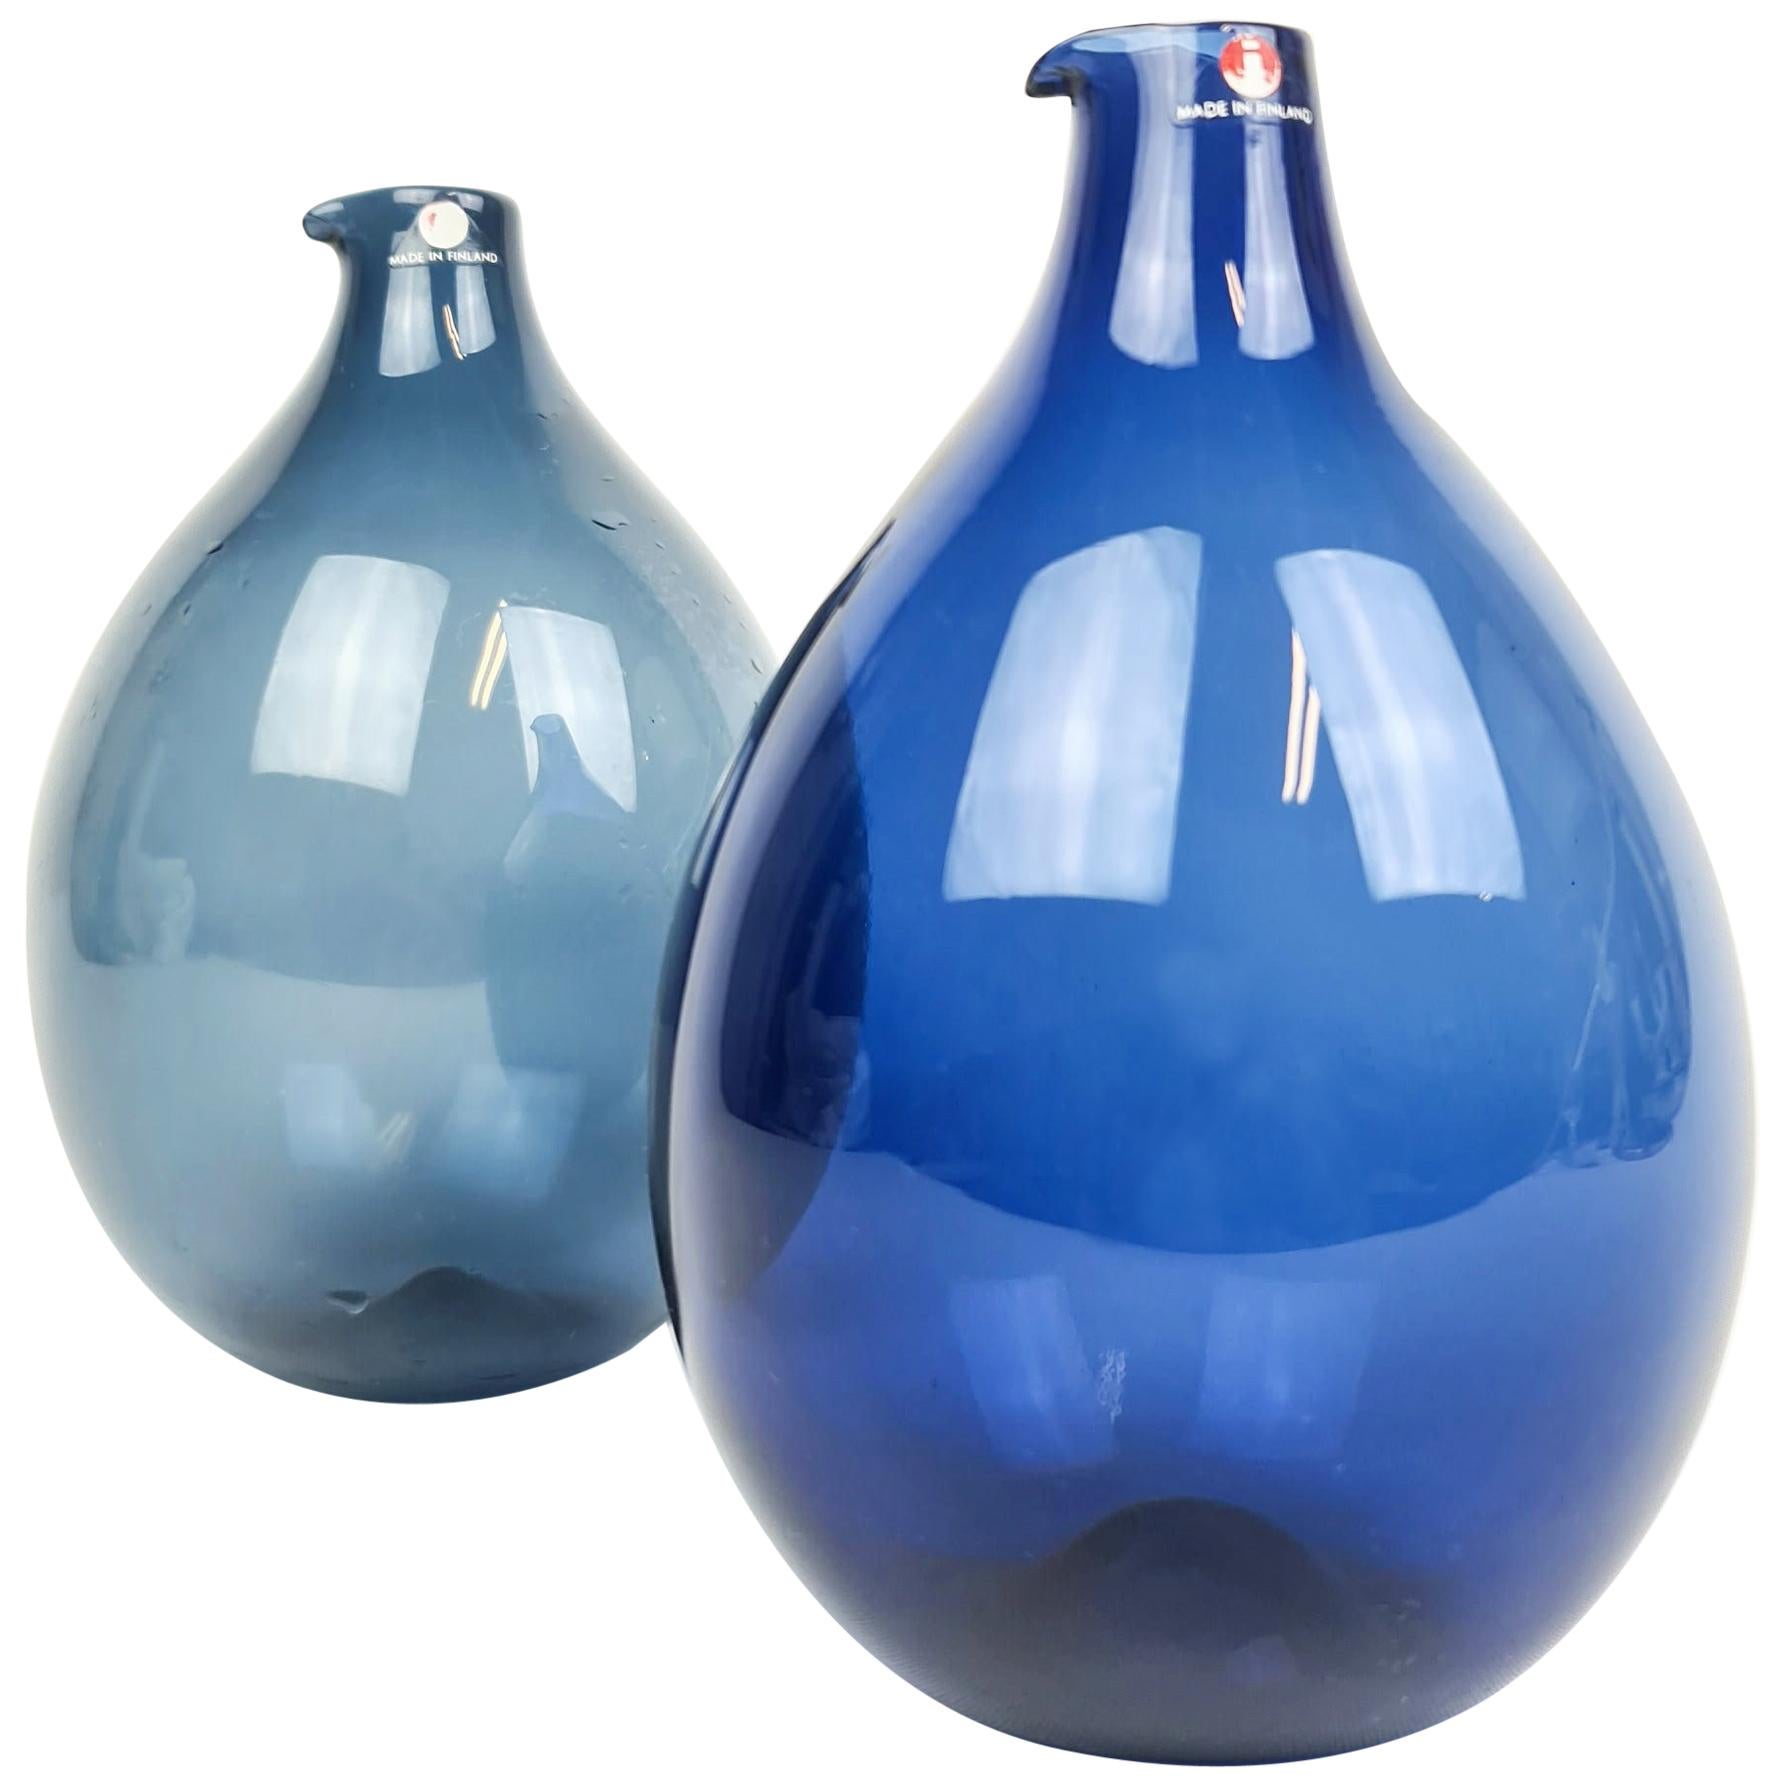 Midcentury Timo Sarpaneva Bird Bottles / Vases Iittala